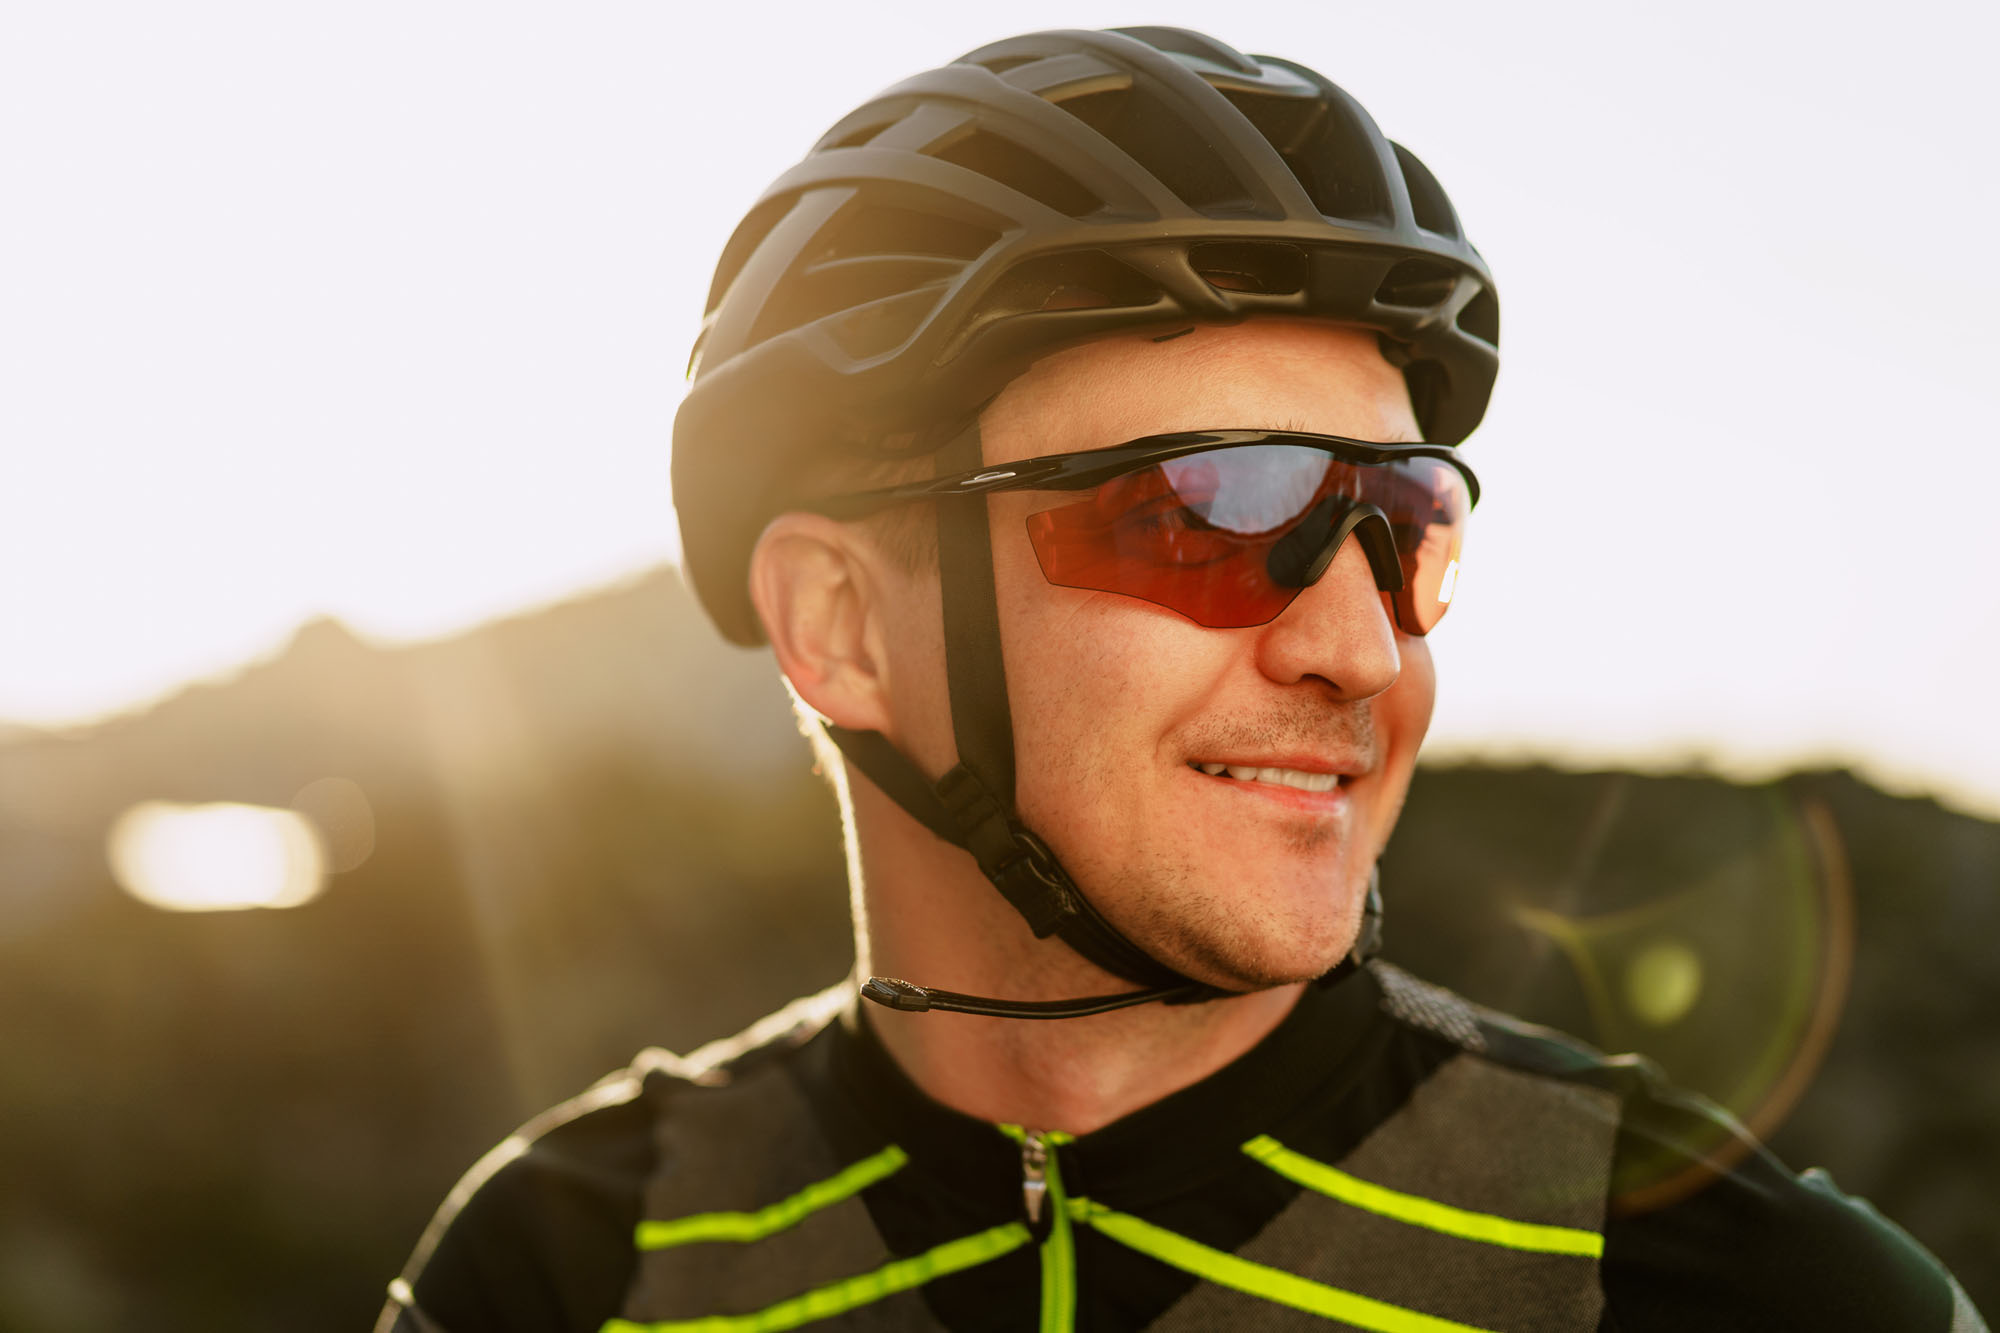 Occhiali Bicicletta polarizzata protezione UV occhiali da sole vento densità Occhiali protettivi 